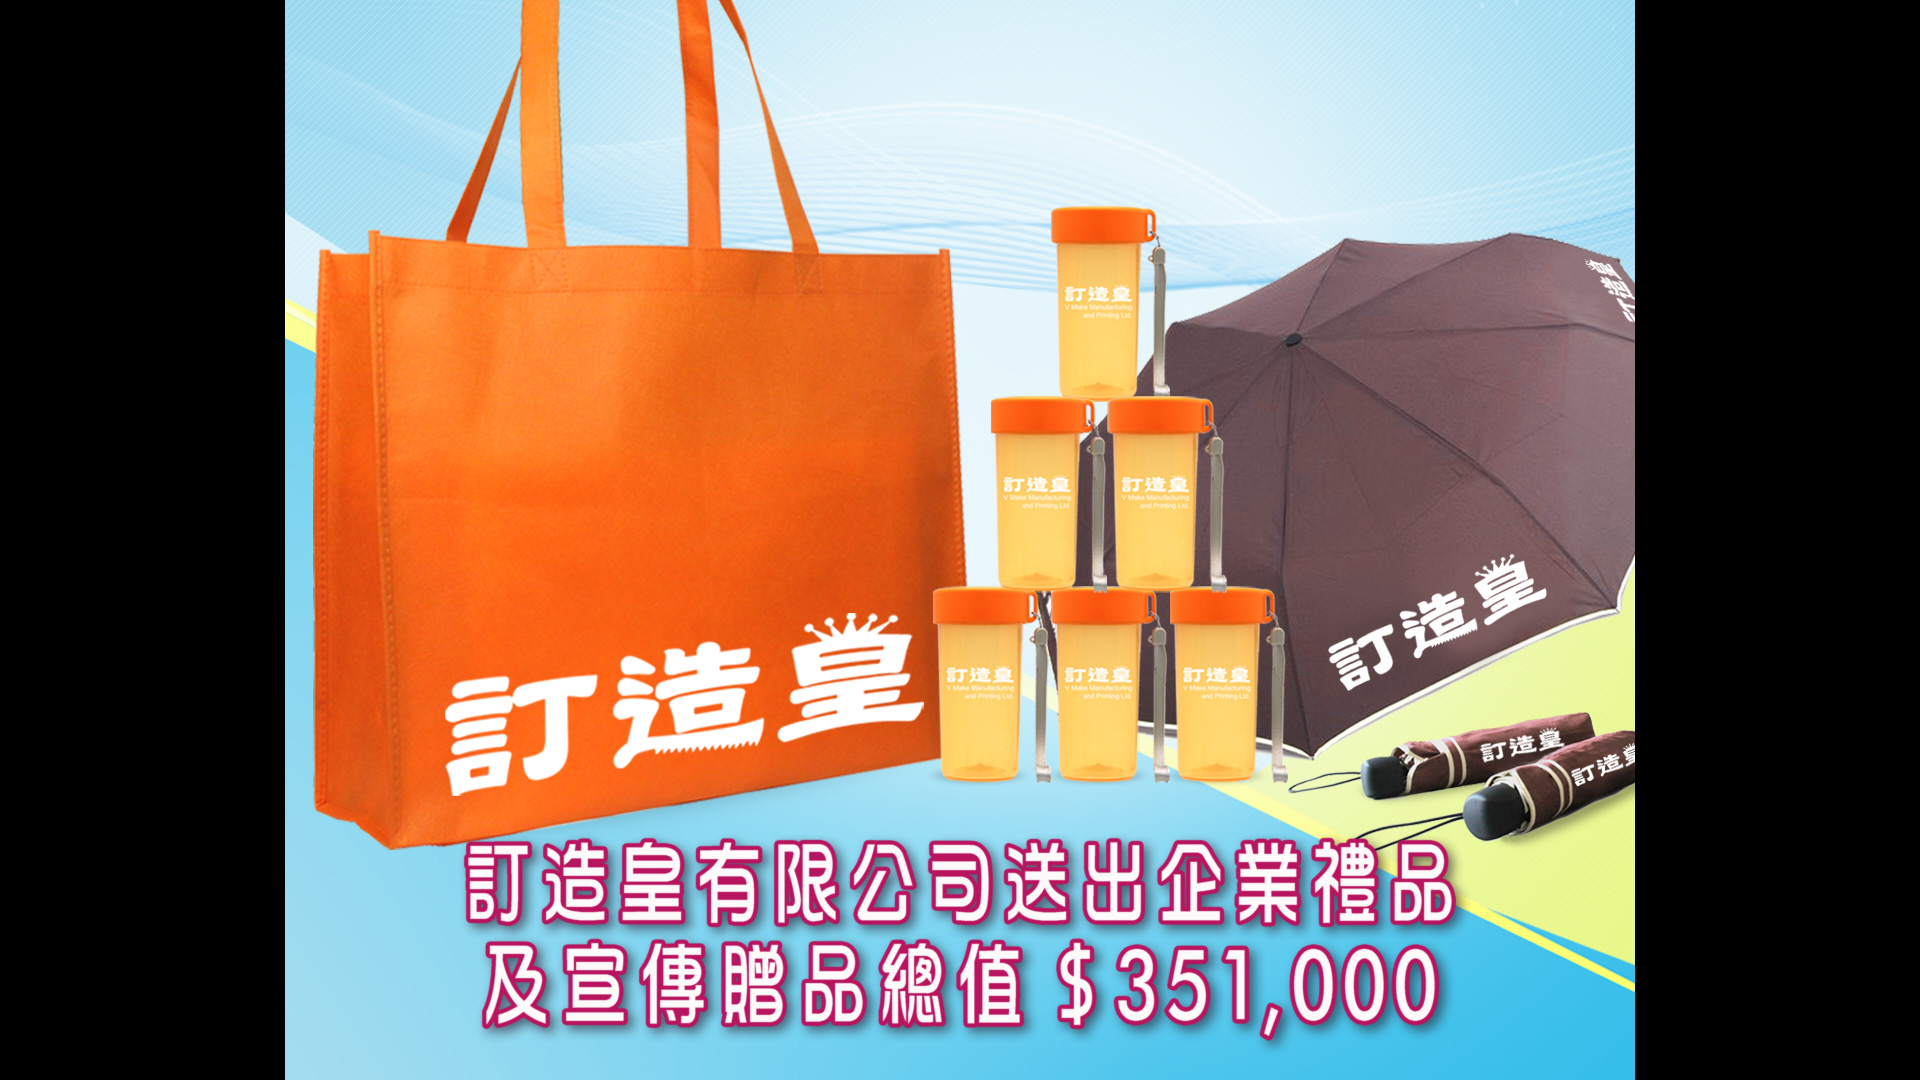 TVB 超級無敵獎門人獲訂造皇有限公司贊助企業禮品及宣傳贈品總值HK$351,000